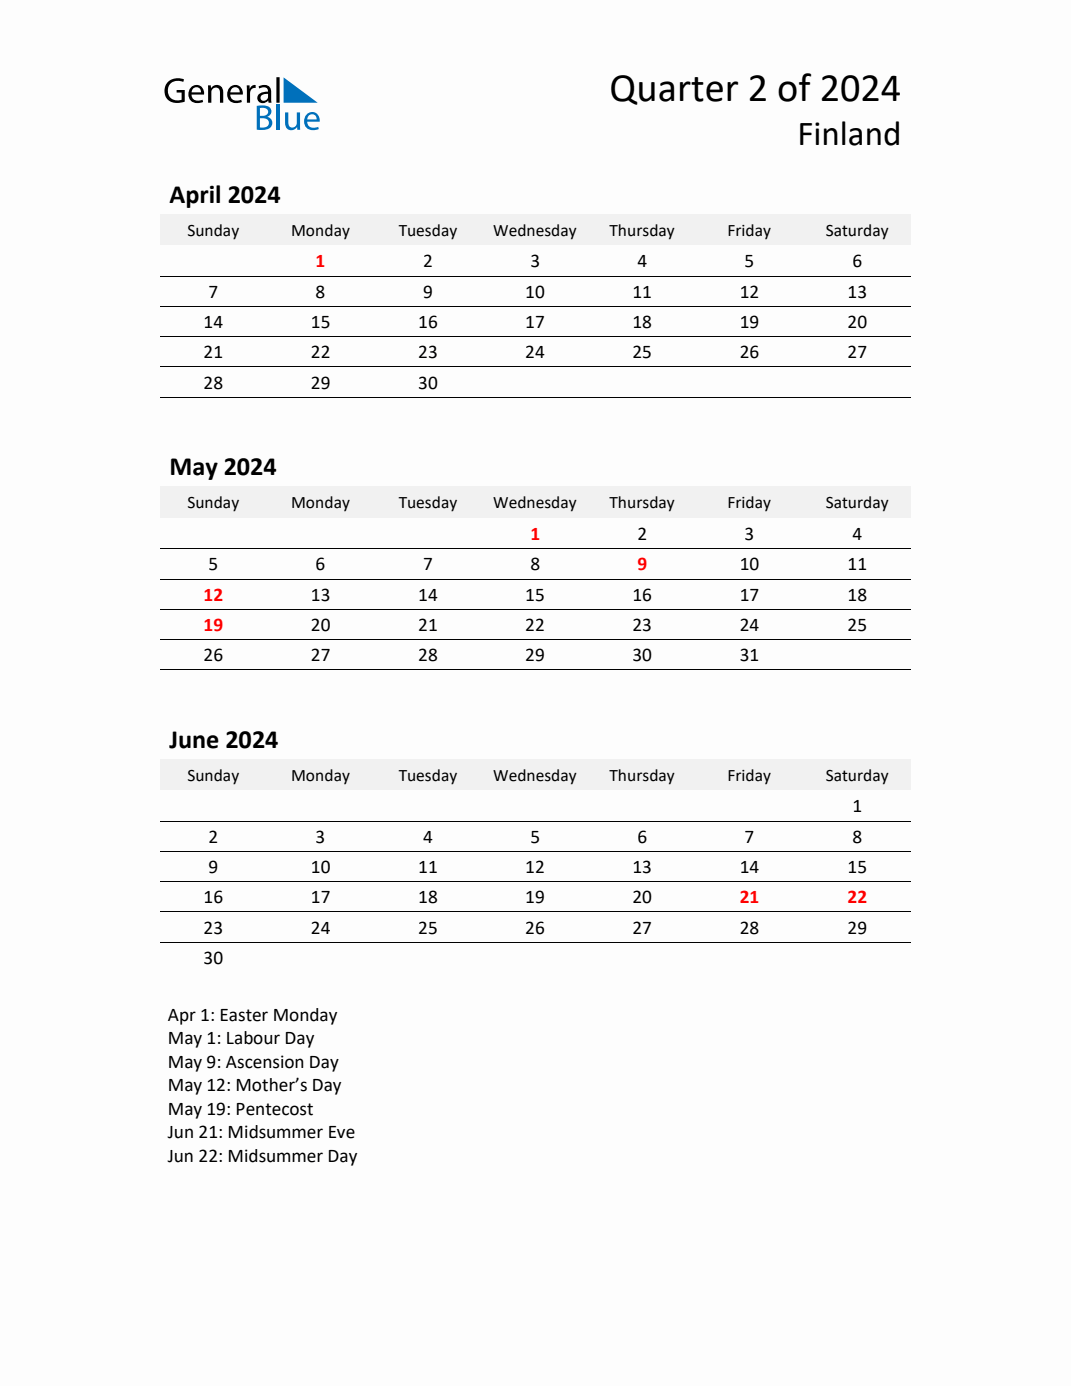 Q2 2024 Quarterly Calendar with Finland Holidays